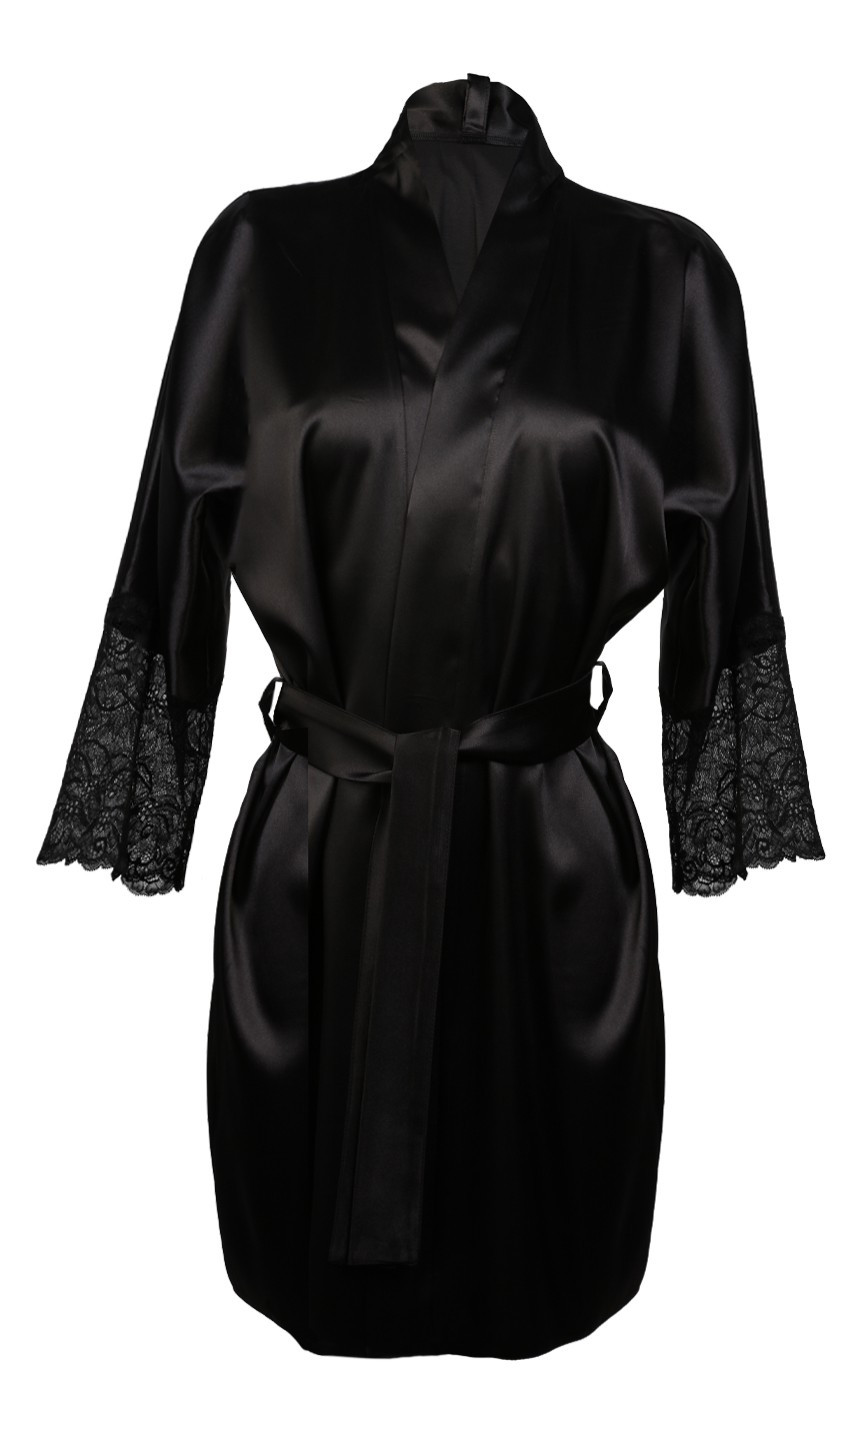 Dámský župan Housecoat model 16664236 Black L černá - DKaren